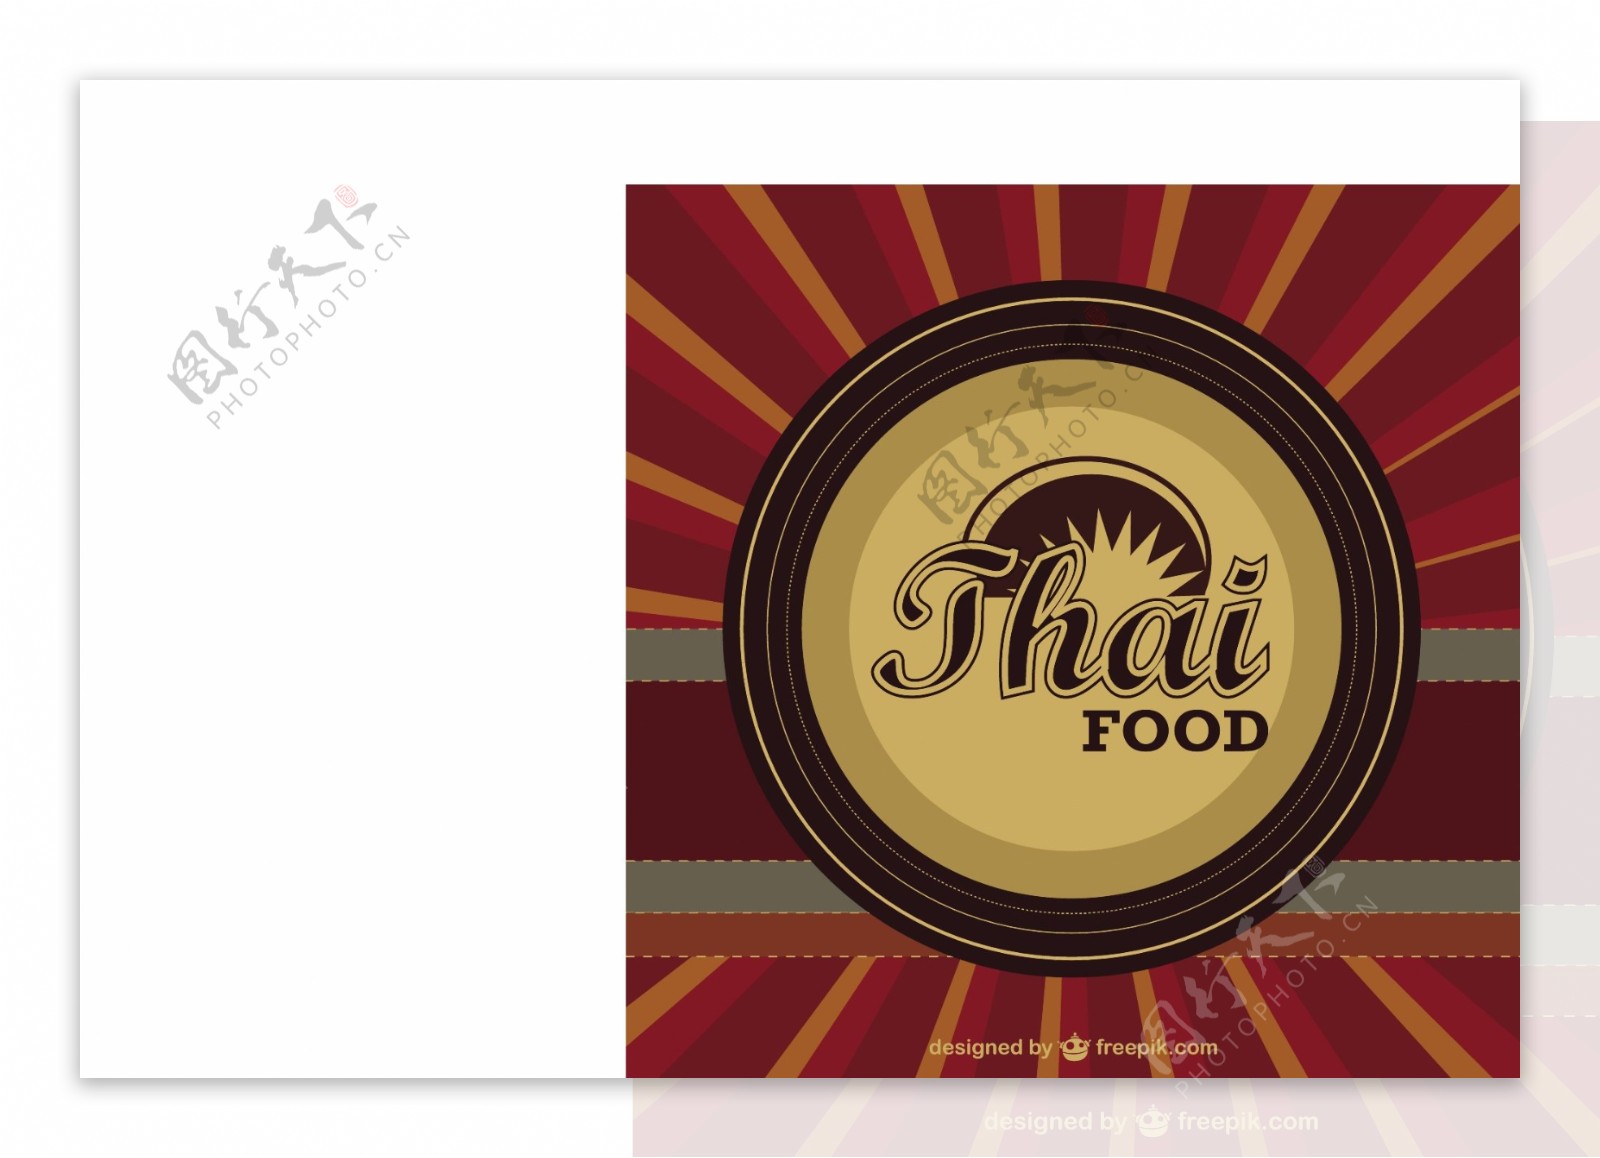 泰国食品标志